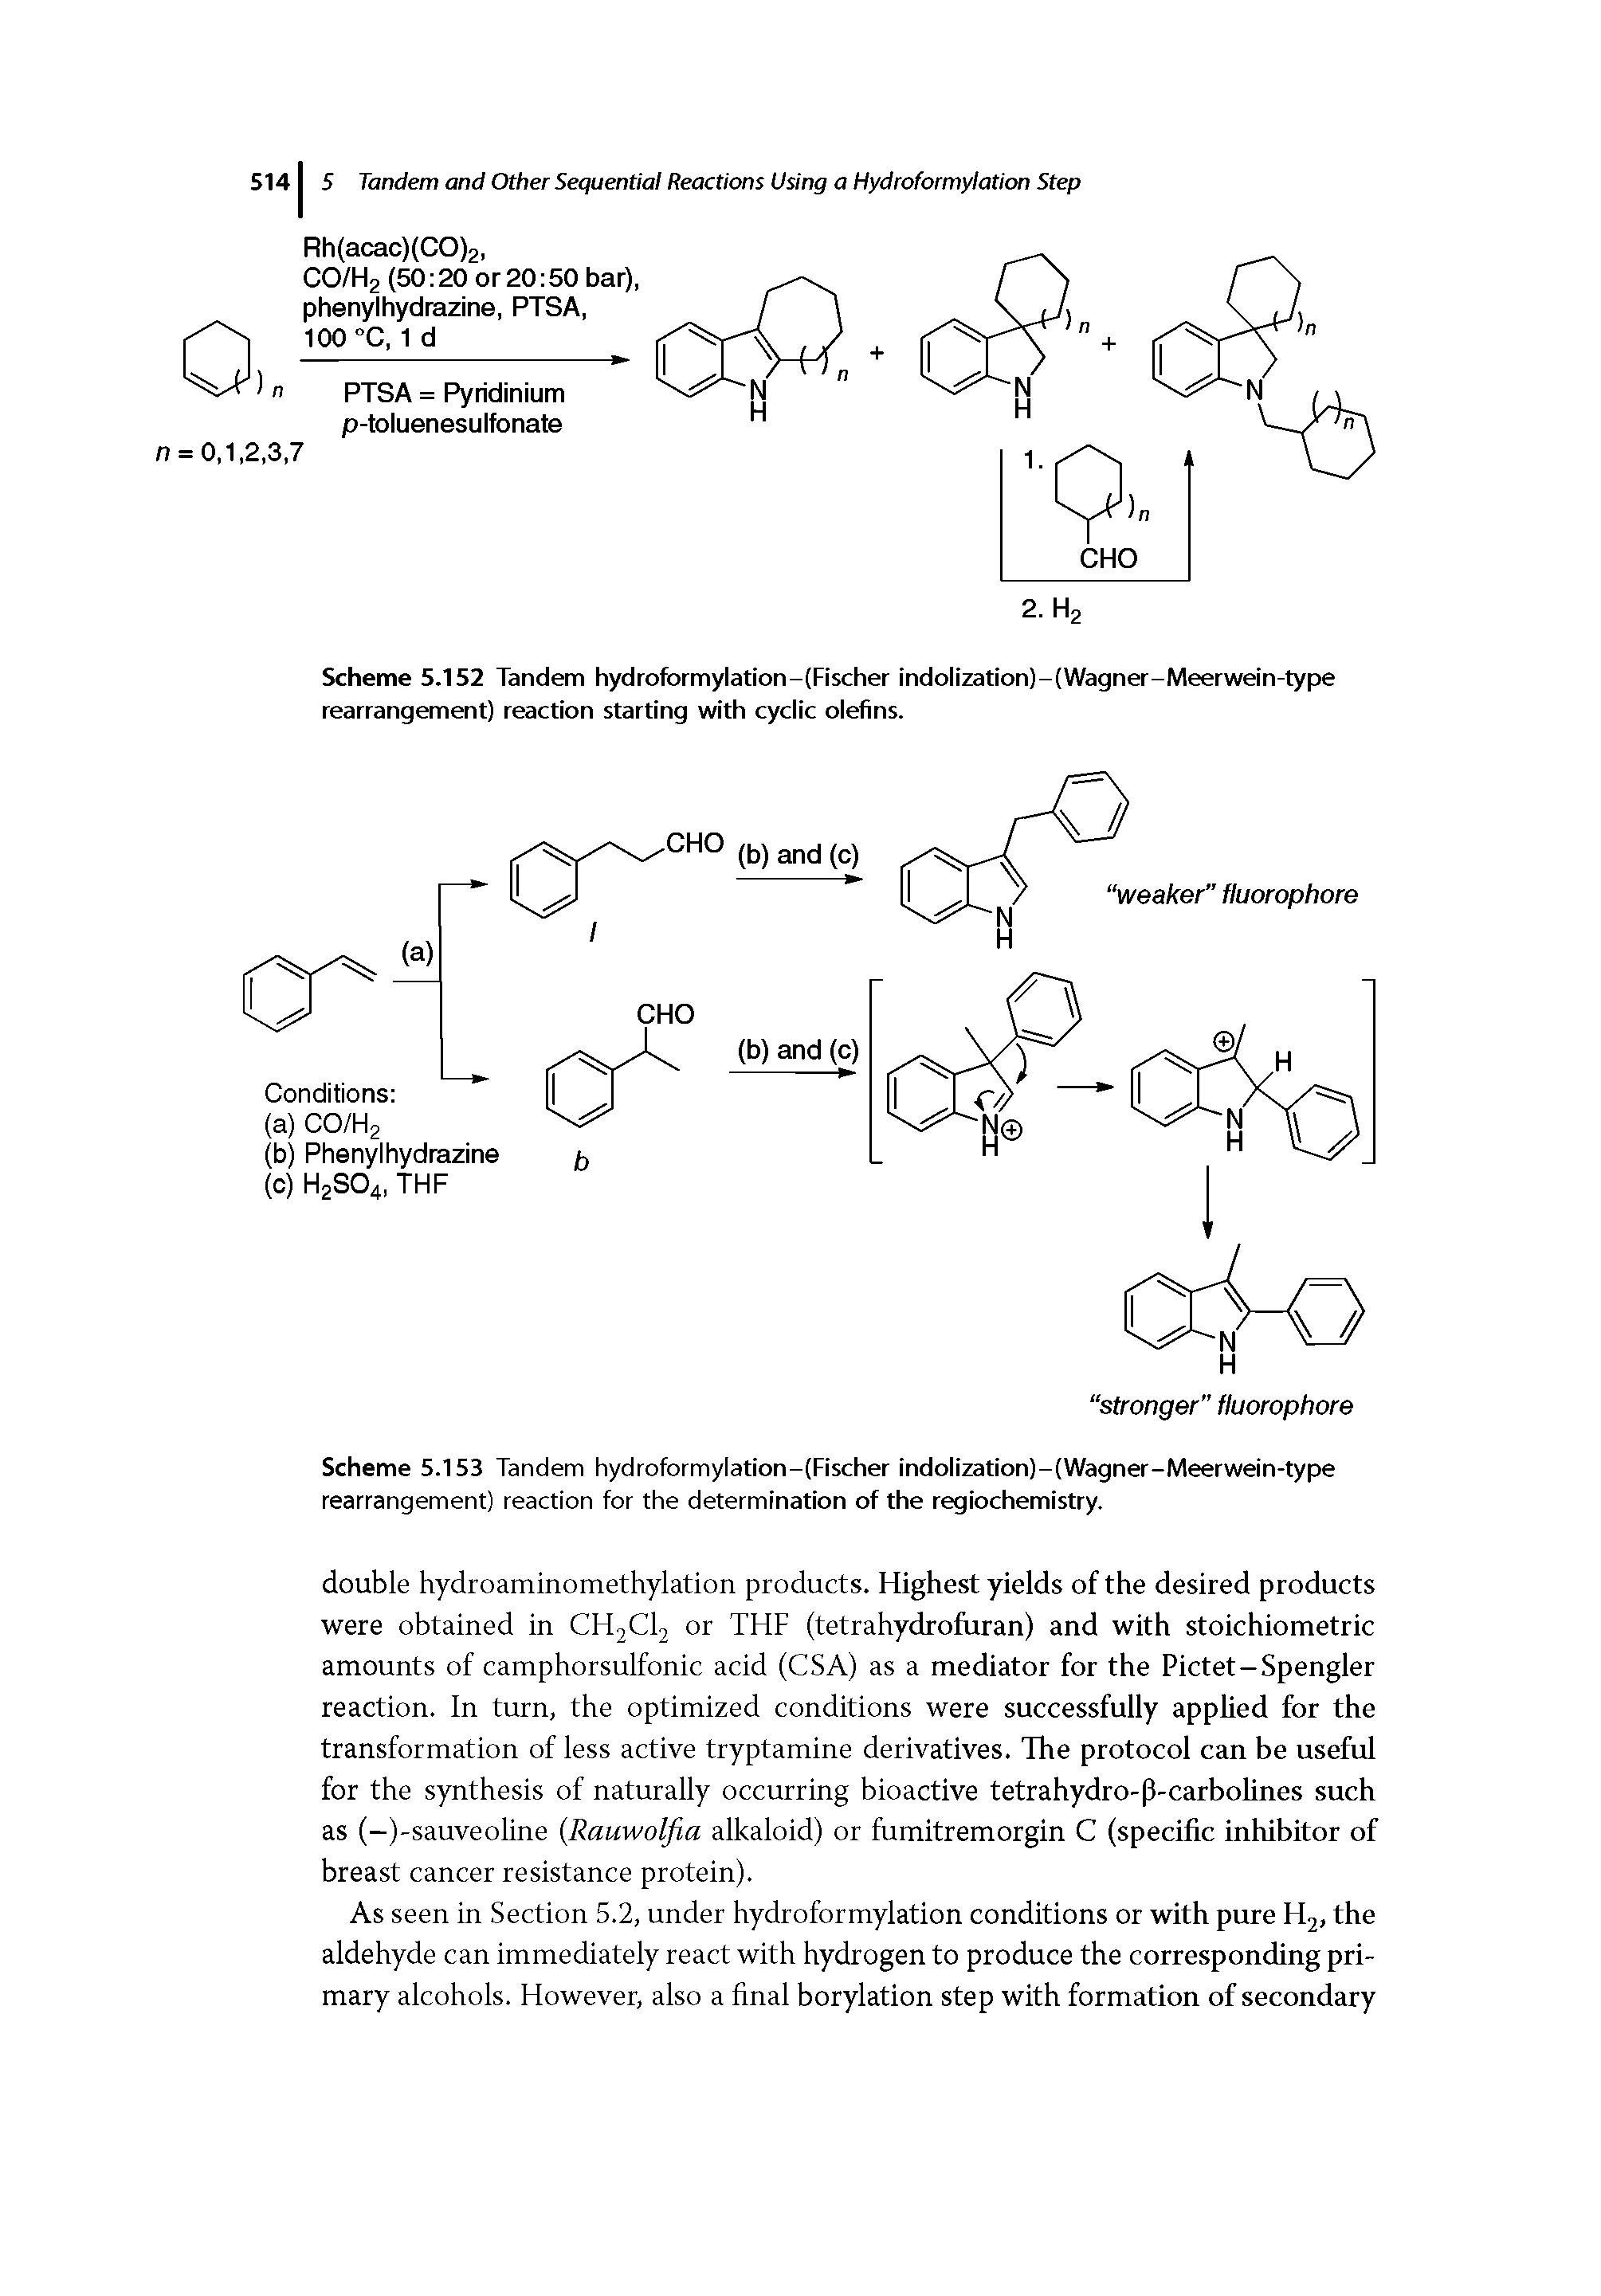 Scheme 5.153 Tandem hydroformylation-(Fischer indolization)-(Wagner-Meerwan-type rearrangement) reaction for the determination of the regiochemistry.